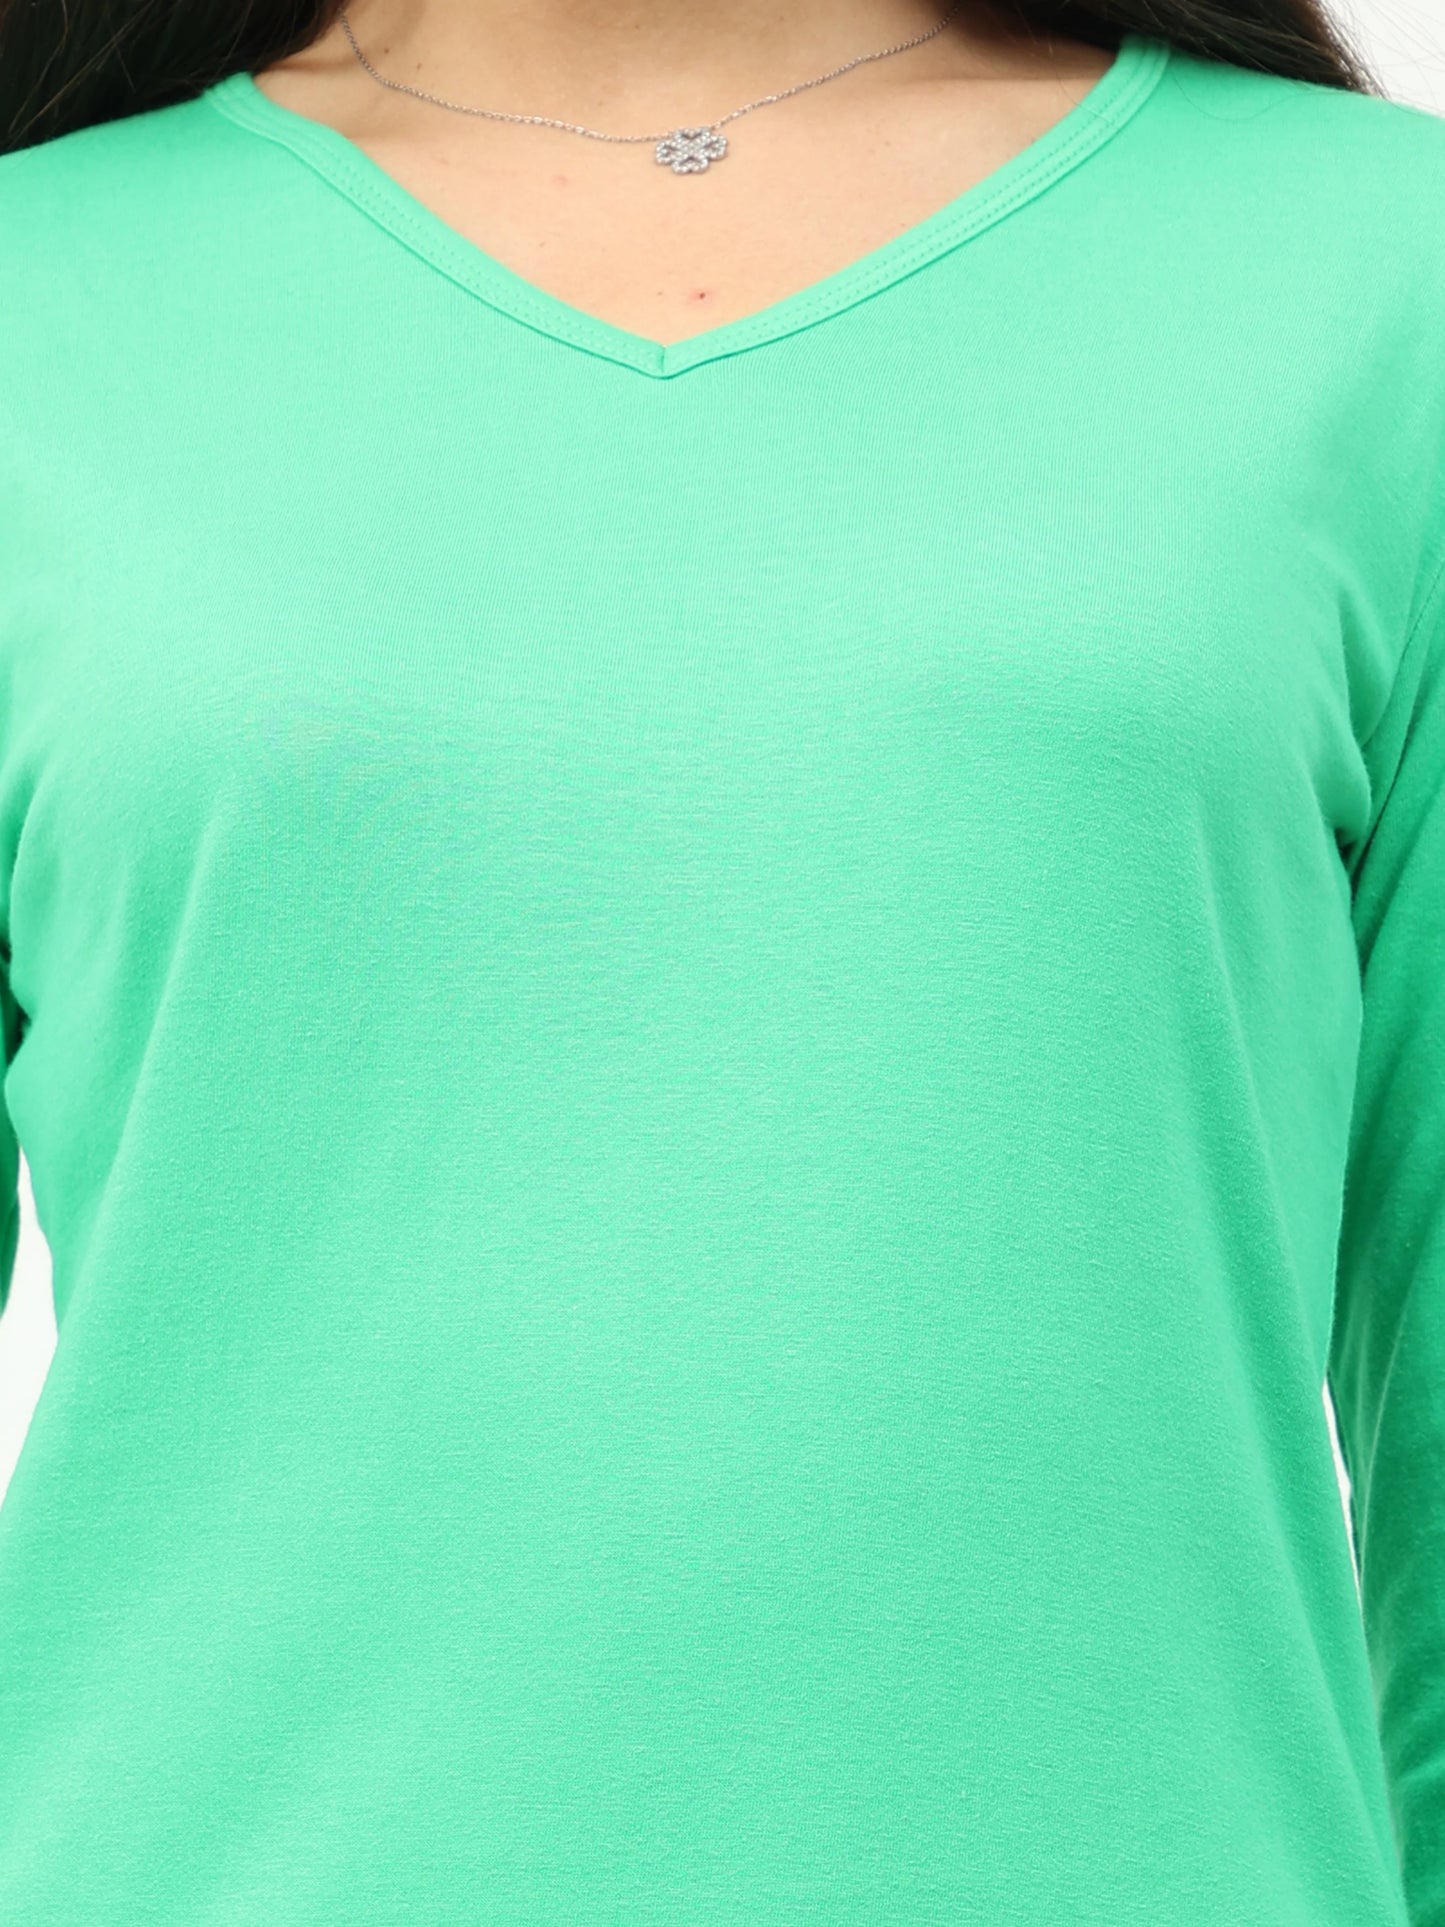 Women's Cotton Plain V Neck Full Sleeve Pista Green Color T-Shirt